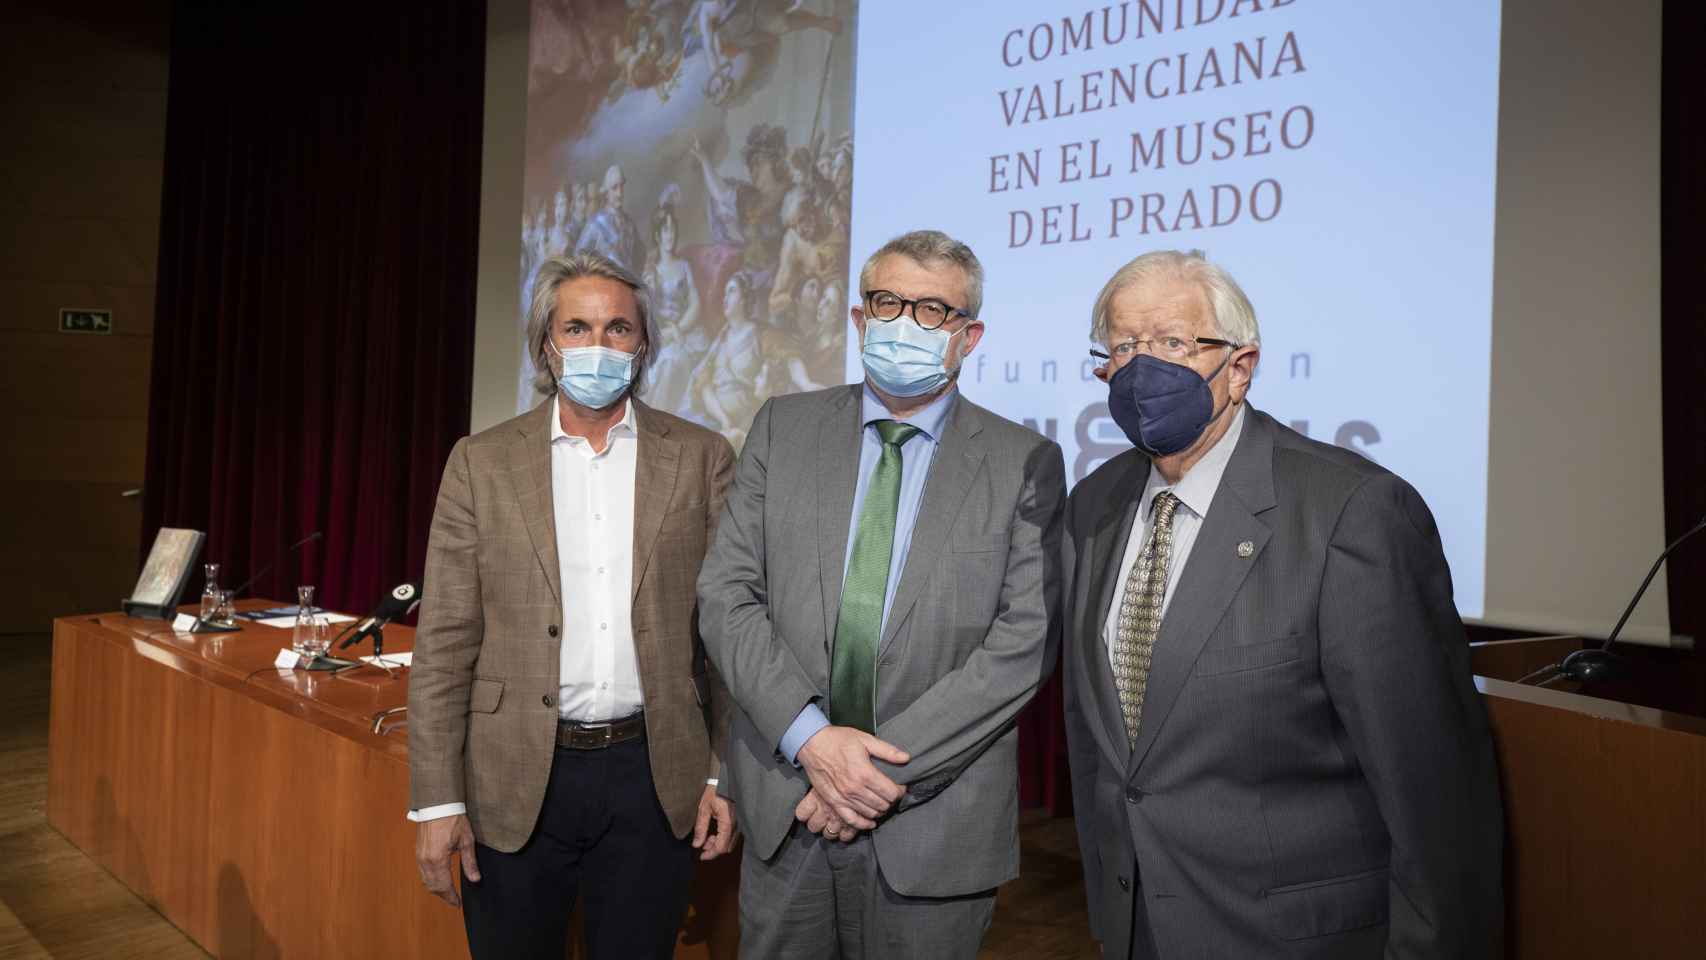 Un libro aglutina el arte valenciano de El Prado: Ninguna comunidad ha tenido tanta presencia